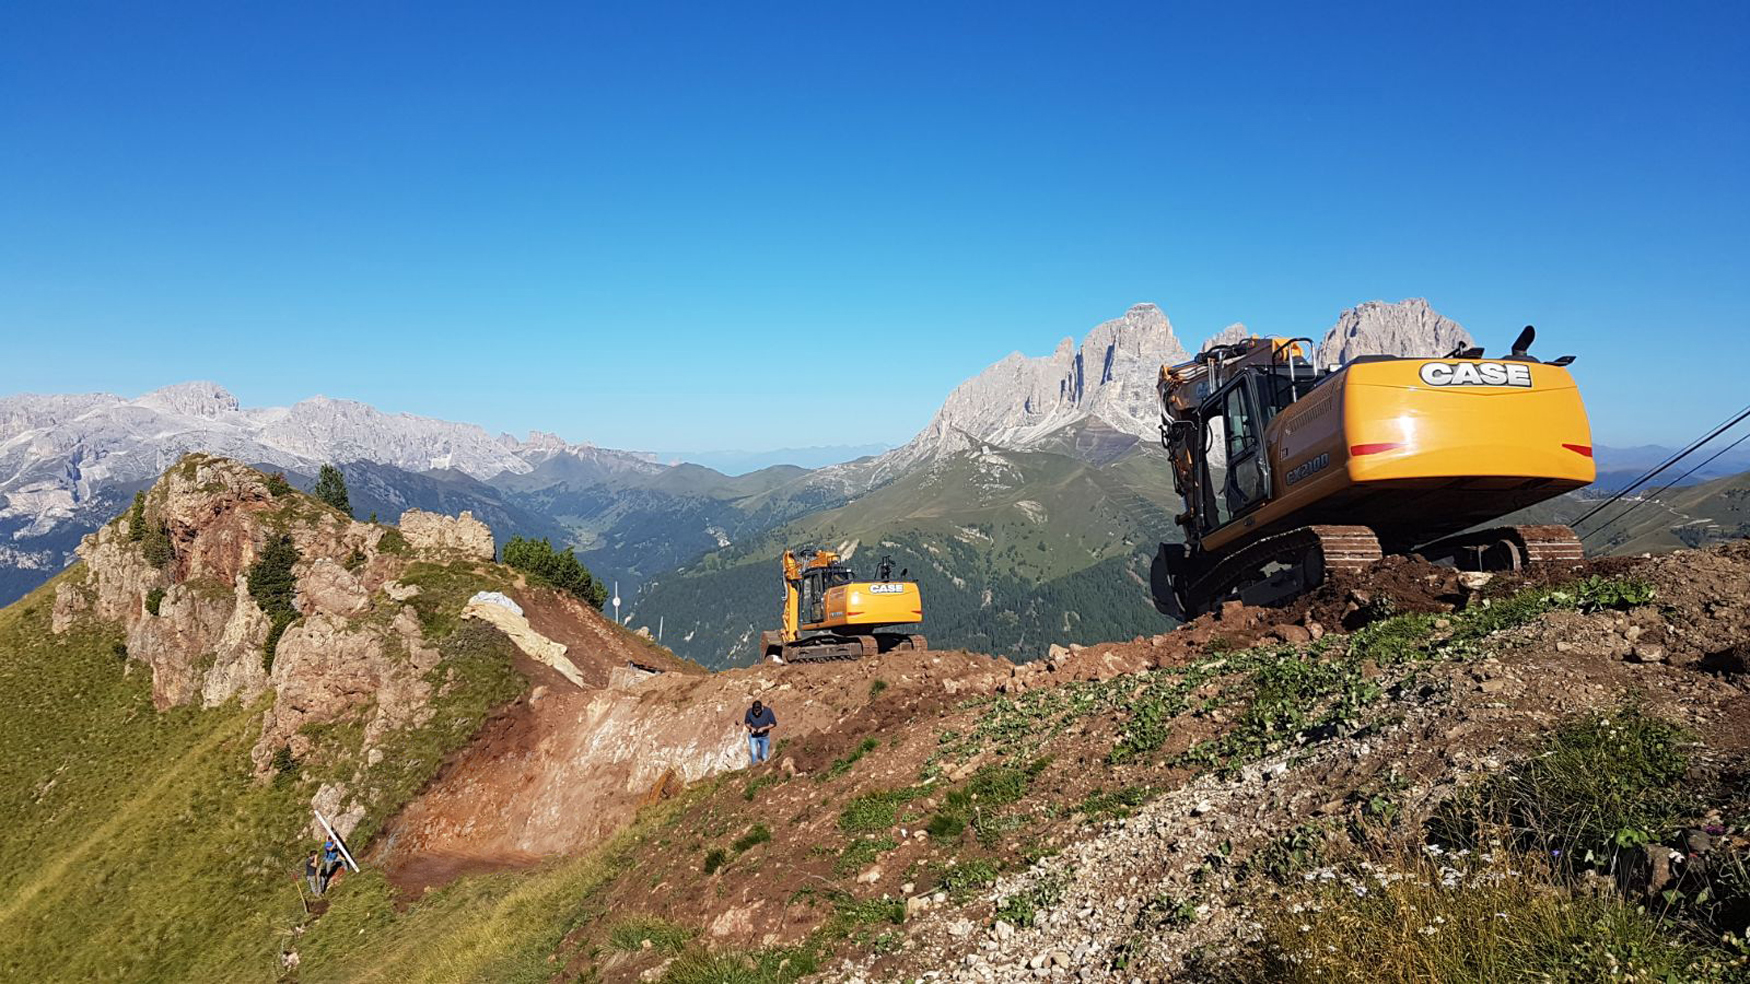 Excavadoras Case de la Serie D trabajando en el paso del Pordoi